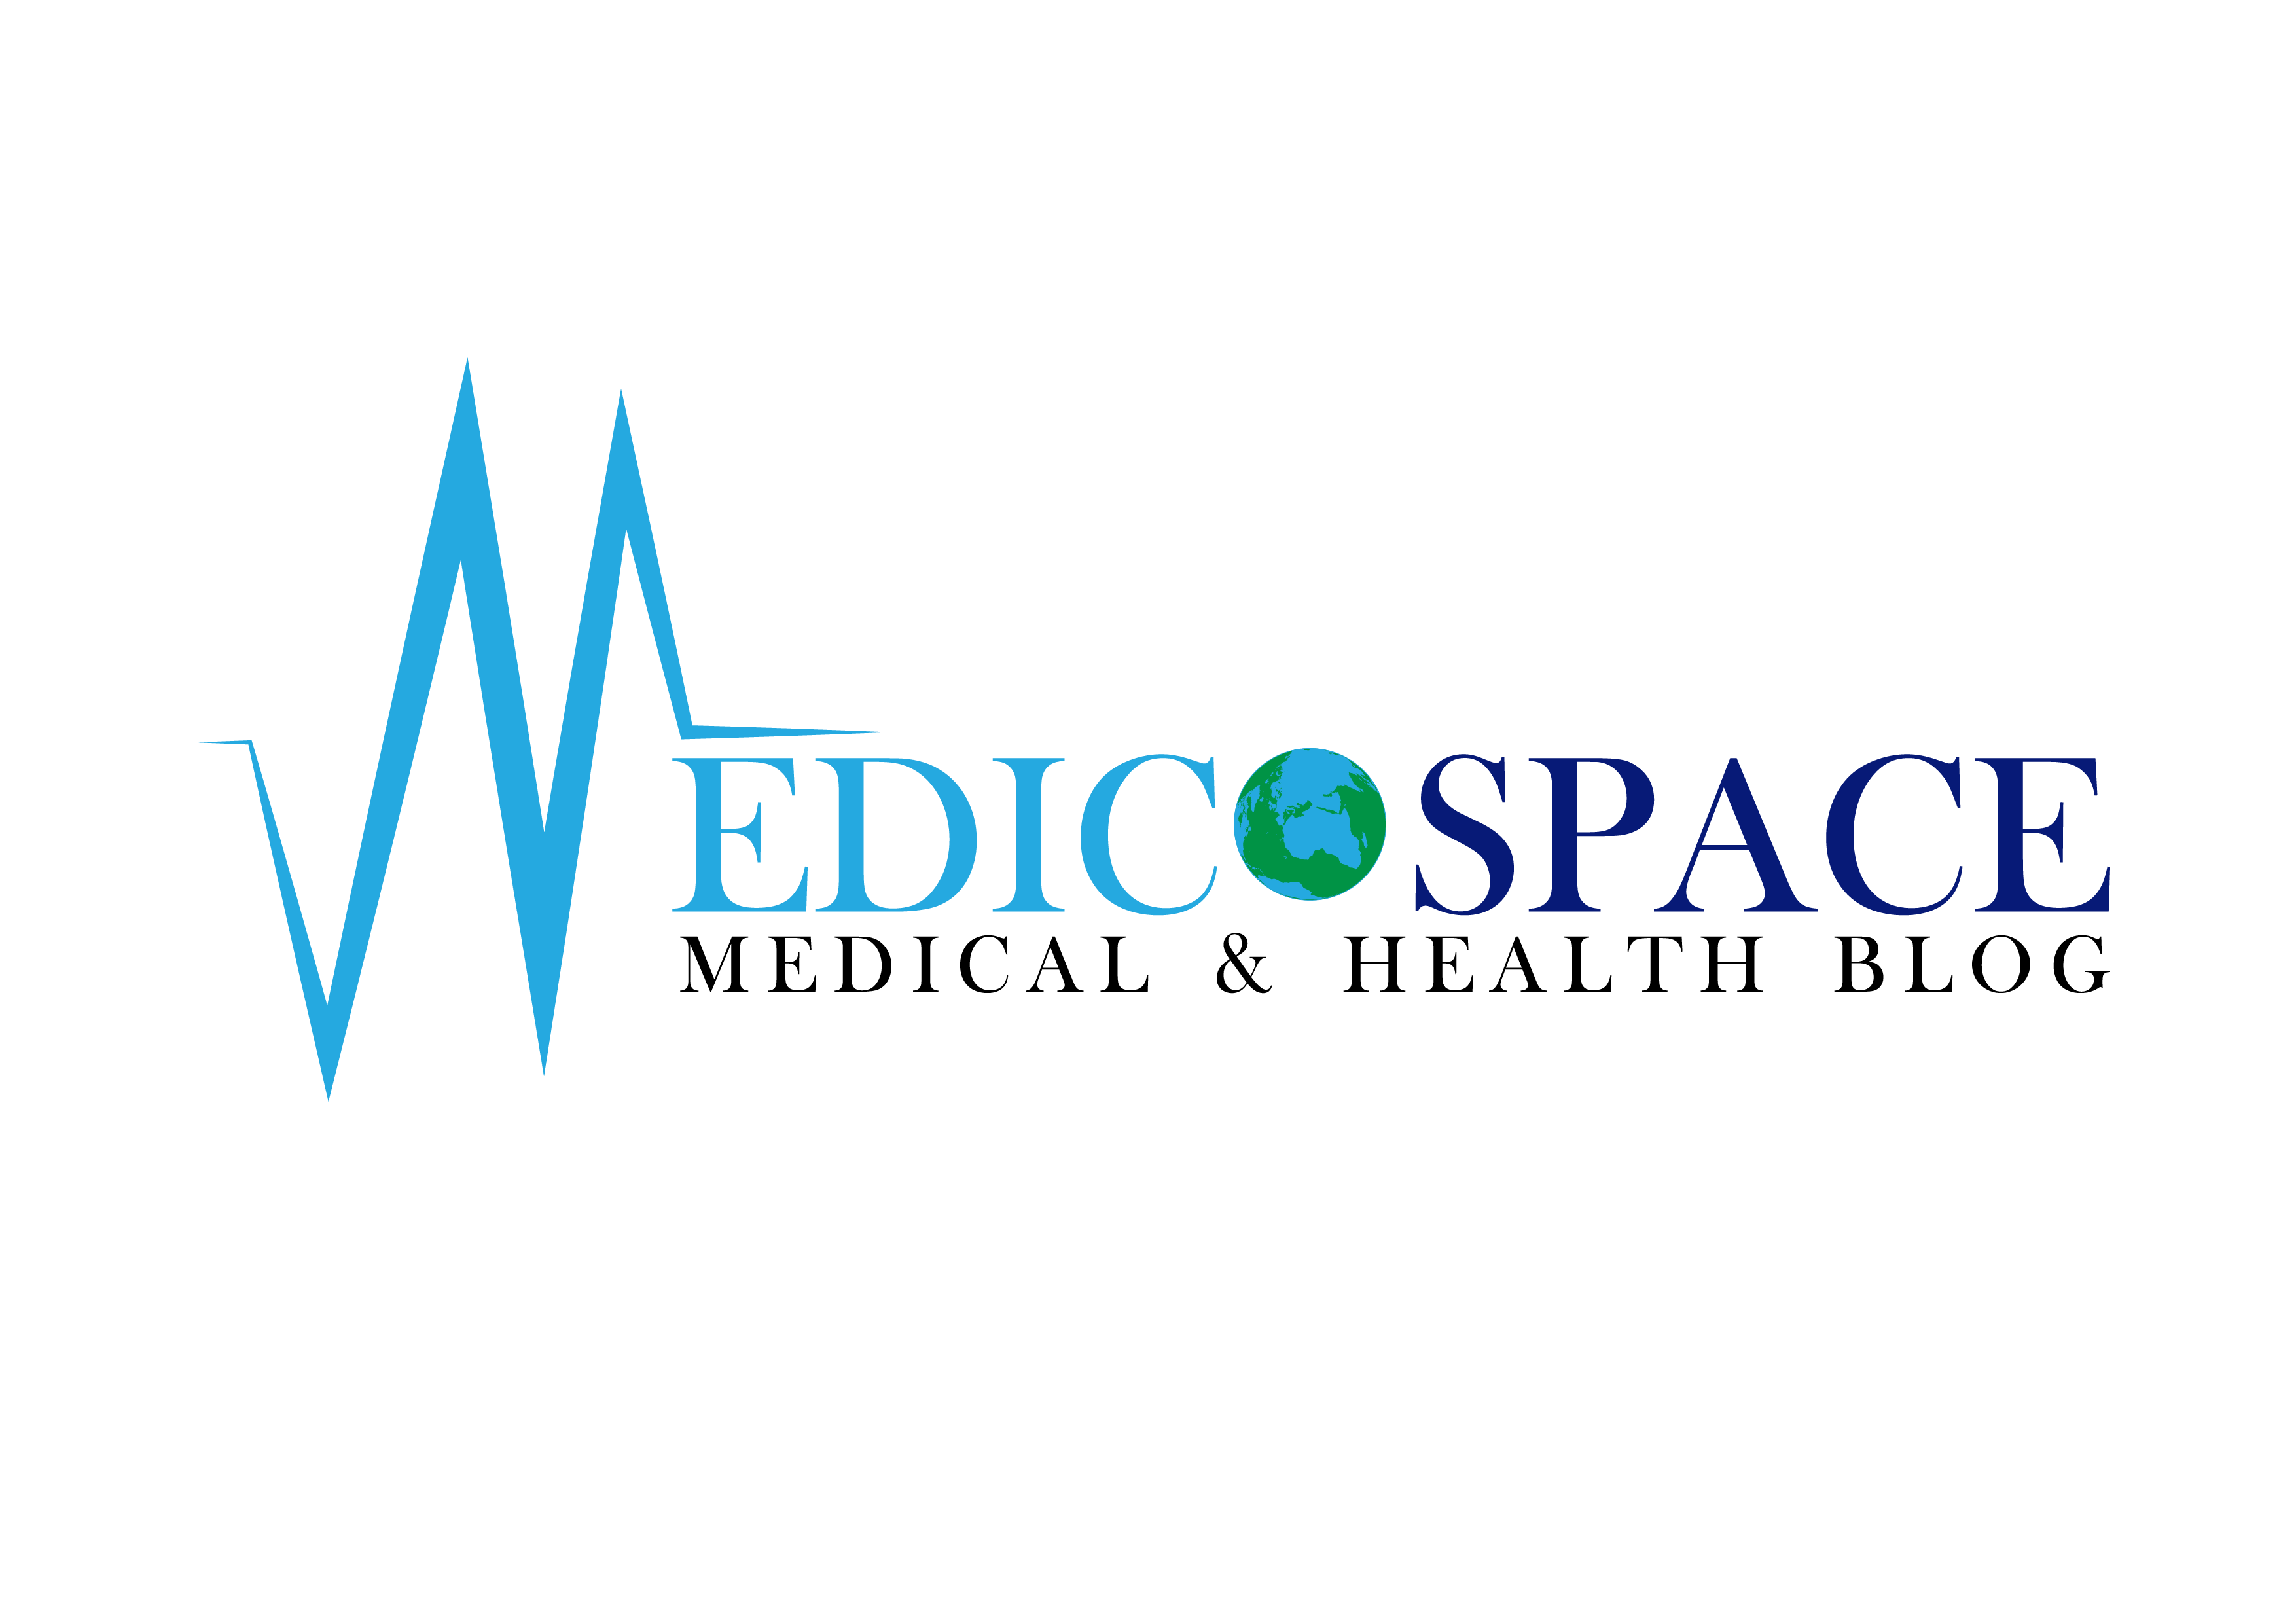 MedicoSpace